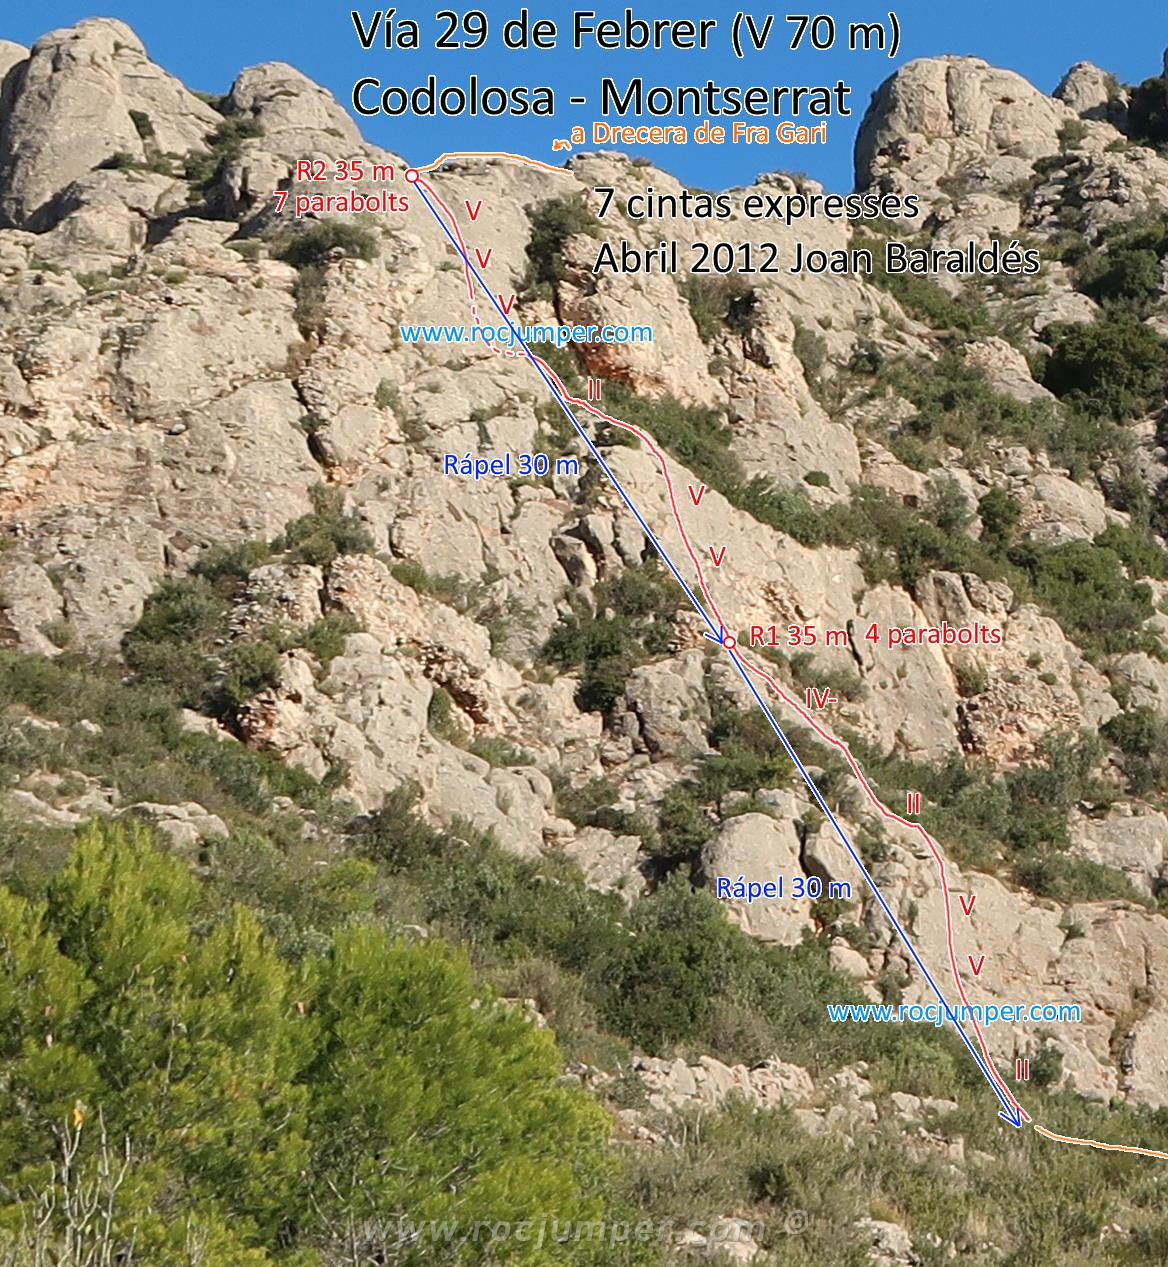 Croquis - Vía 29 de Febrer - Codolosa - Montserrat